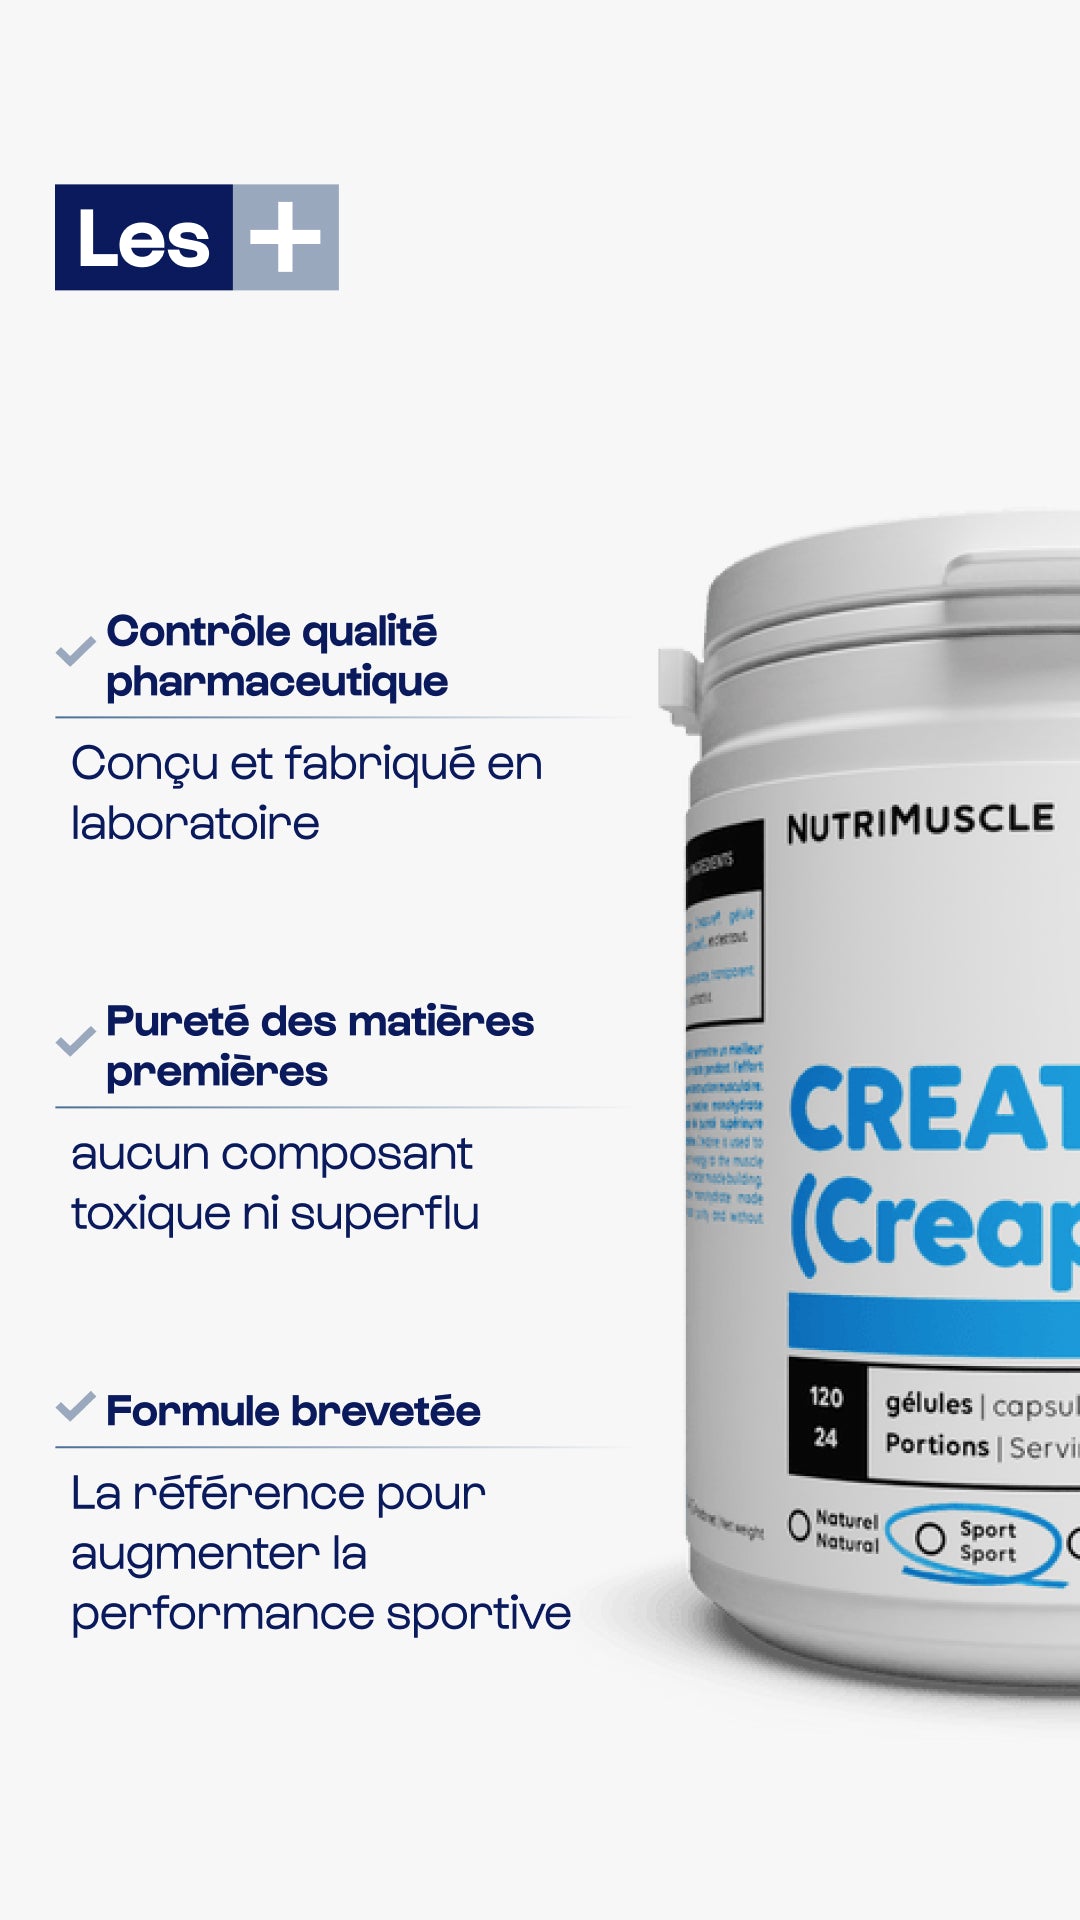 Creatine (Creapure®) in capsules